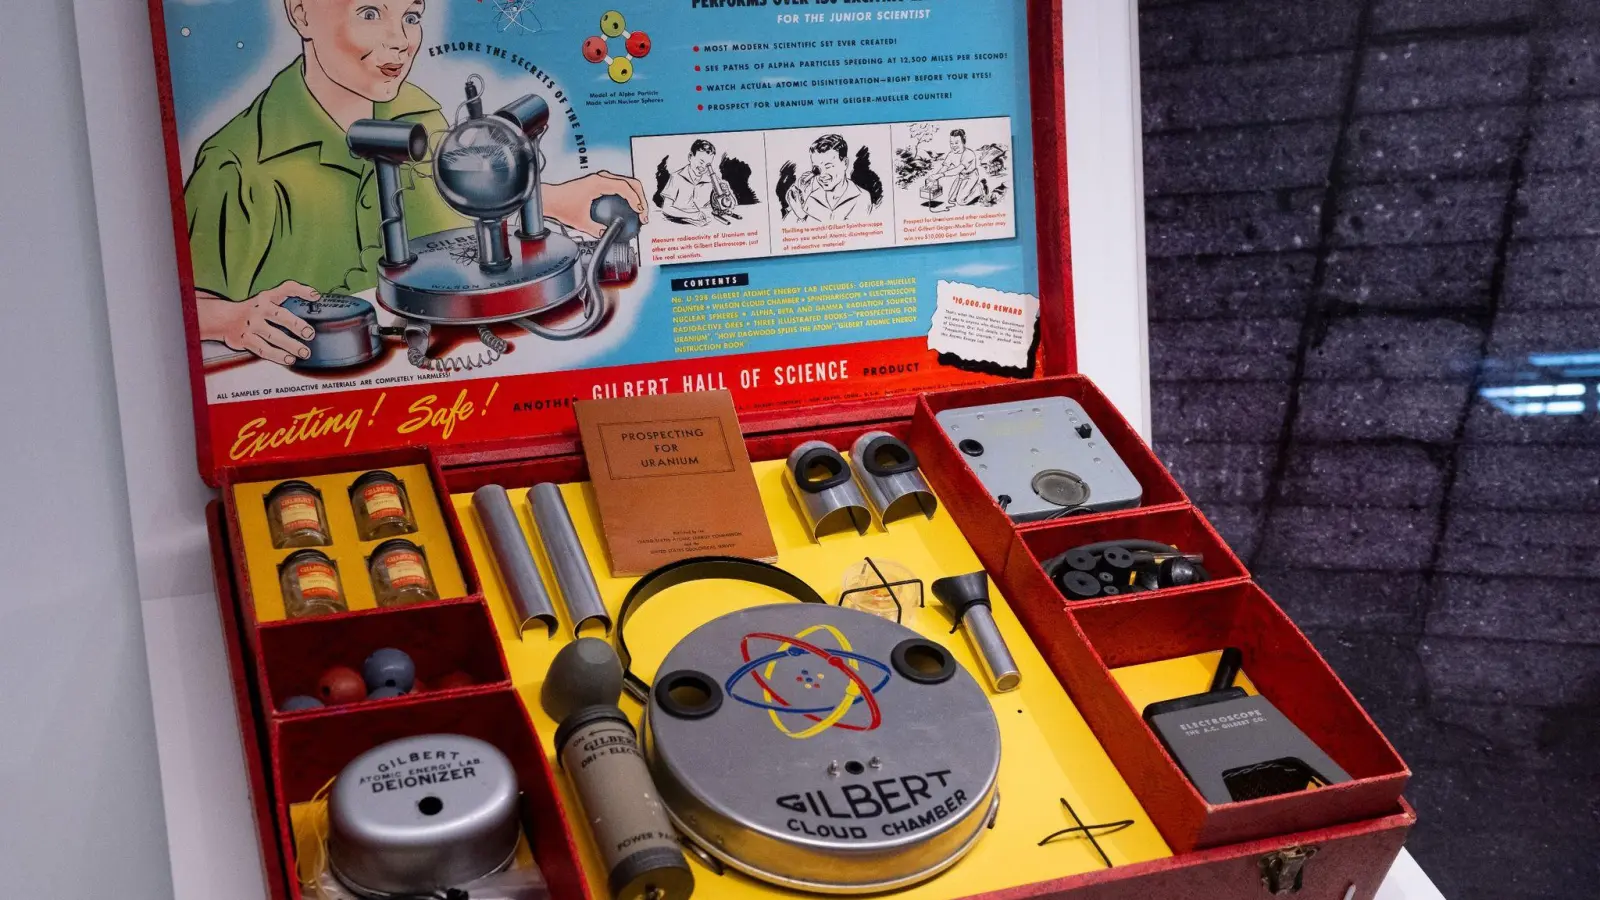 Anfang der 1950er Jahre ging man mit dem Thema Atomenergie noch unbefangen um, wie das „Atomic Energy Lab“ aus den USA beweist, ein Atomenergie-Labor fürs Kinderzimmer. (Foto: Sven Hoppe/dpa)